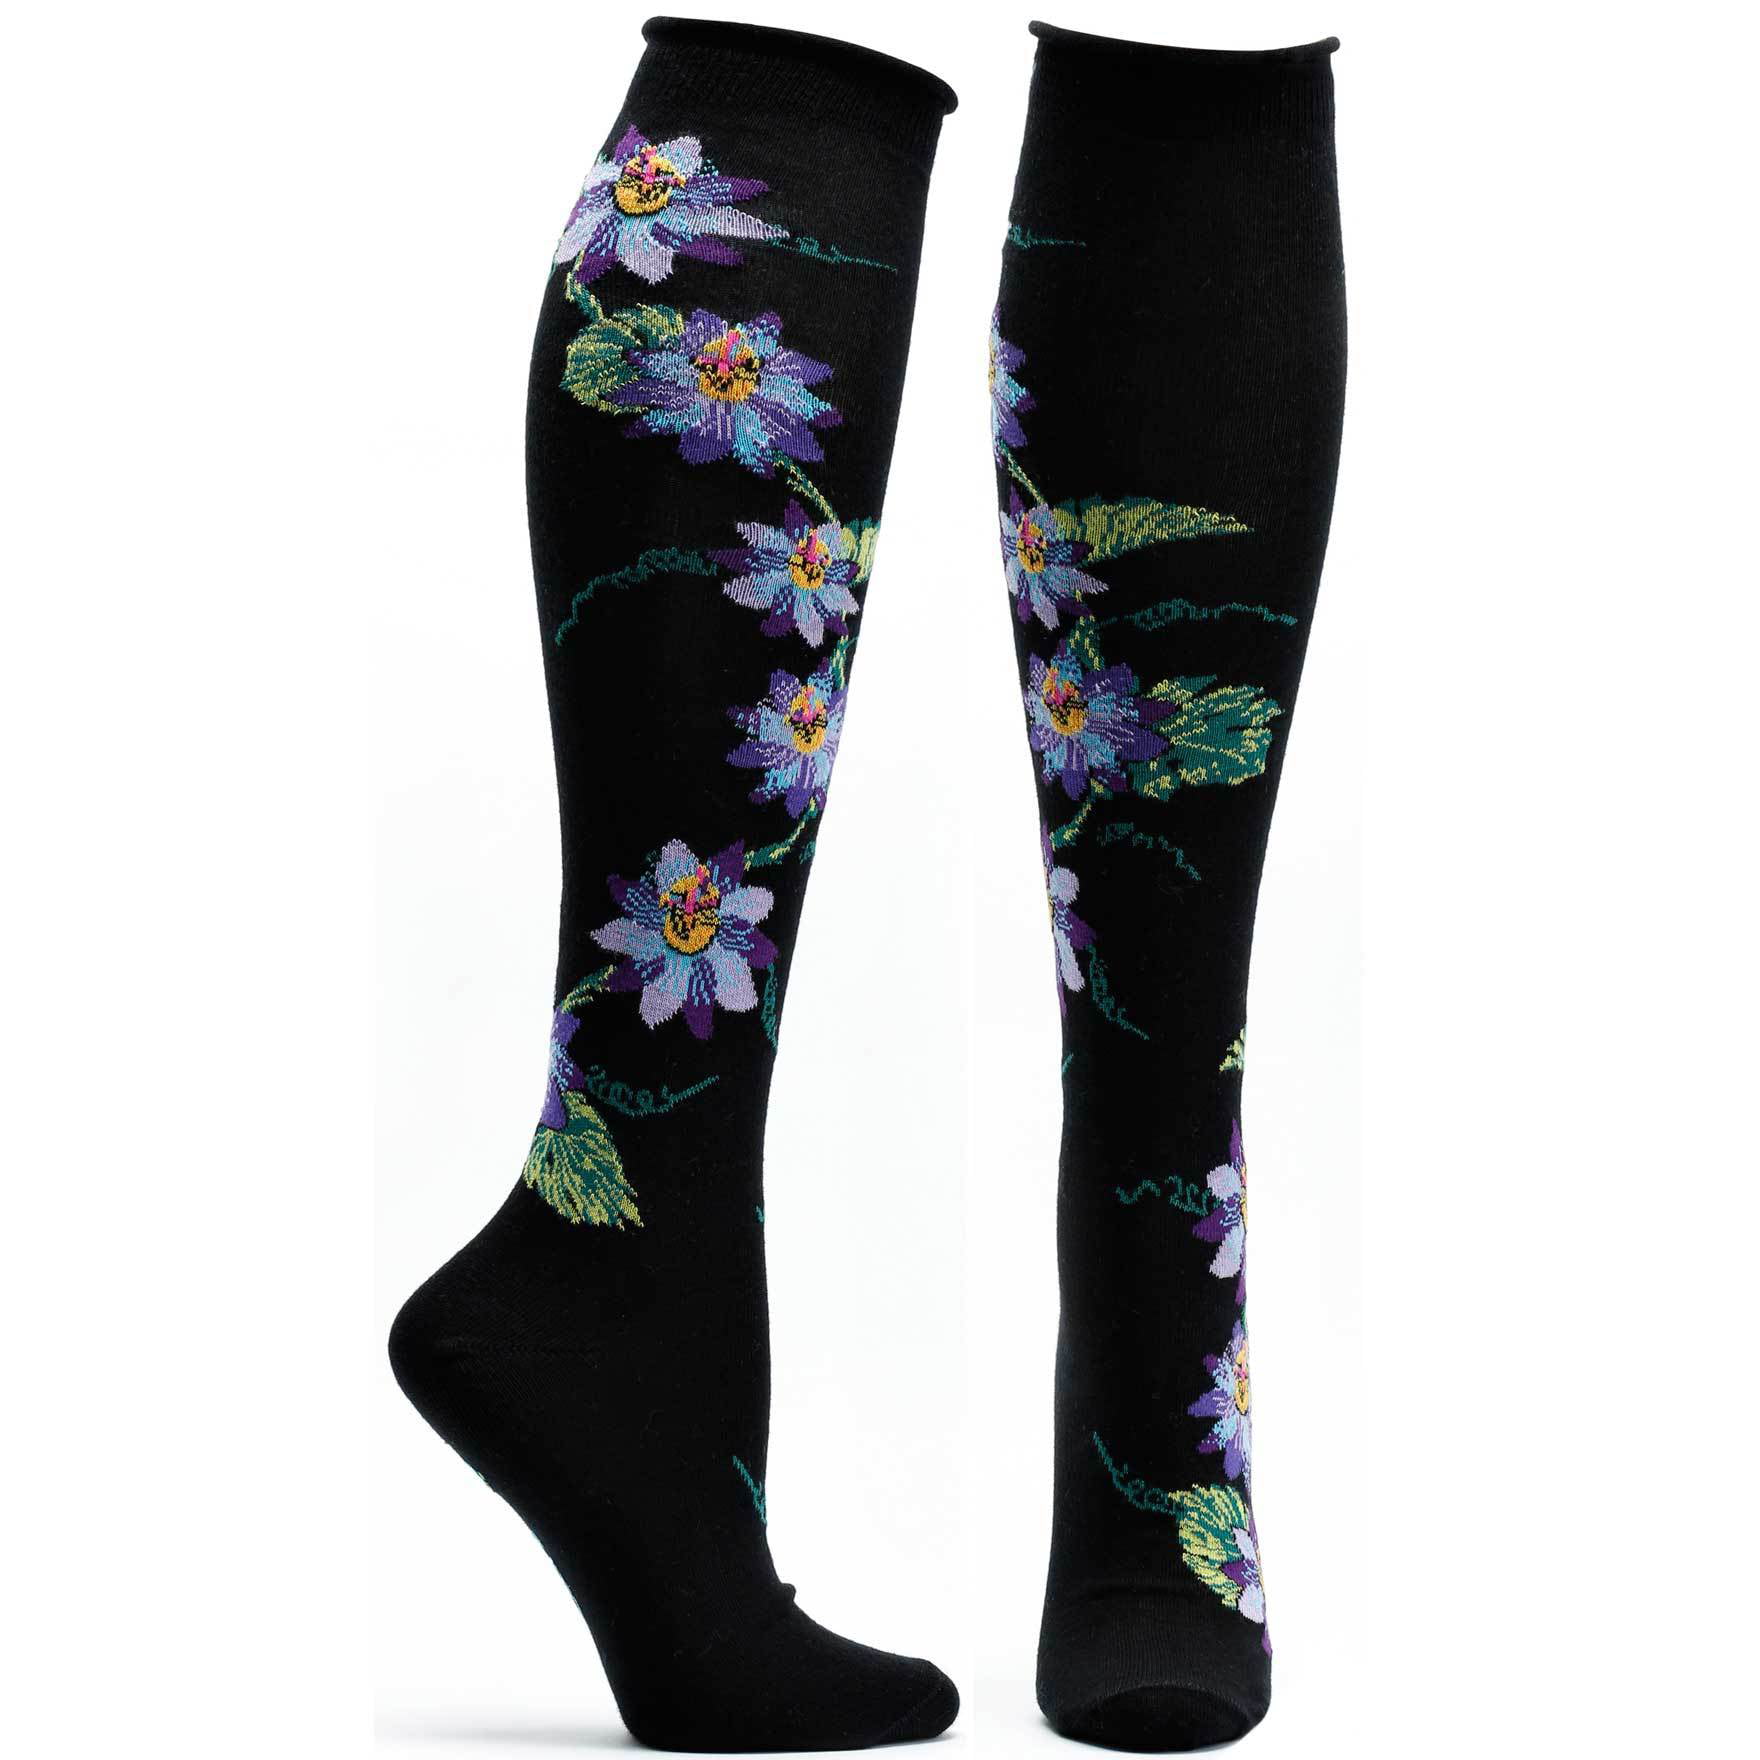 Passionvine Knee High Sock - Walmart.com